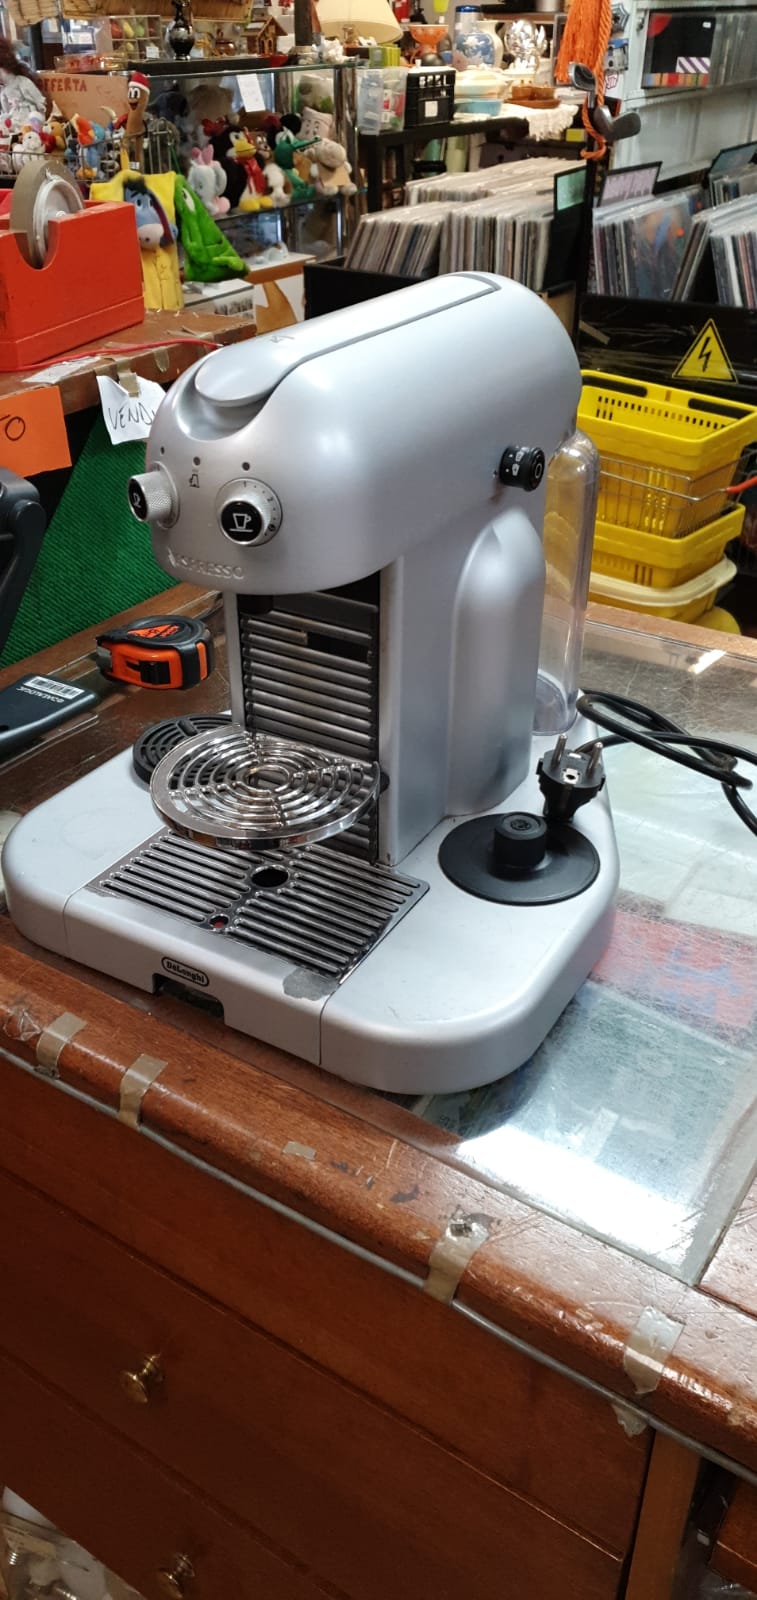 Elios96 Sas, macchina caffè delonghi nespresso